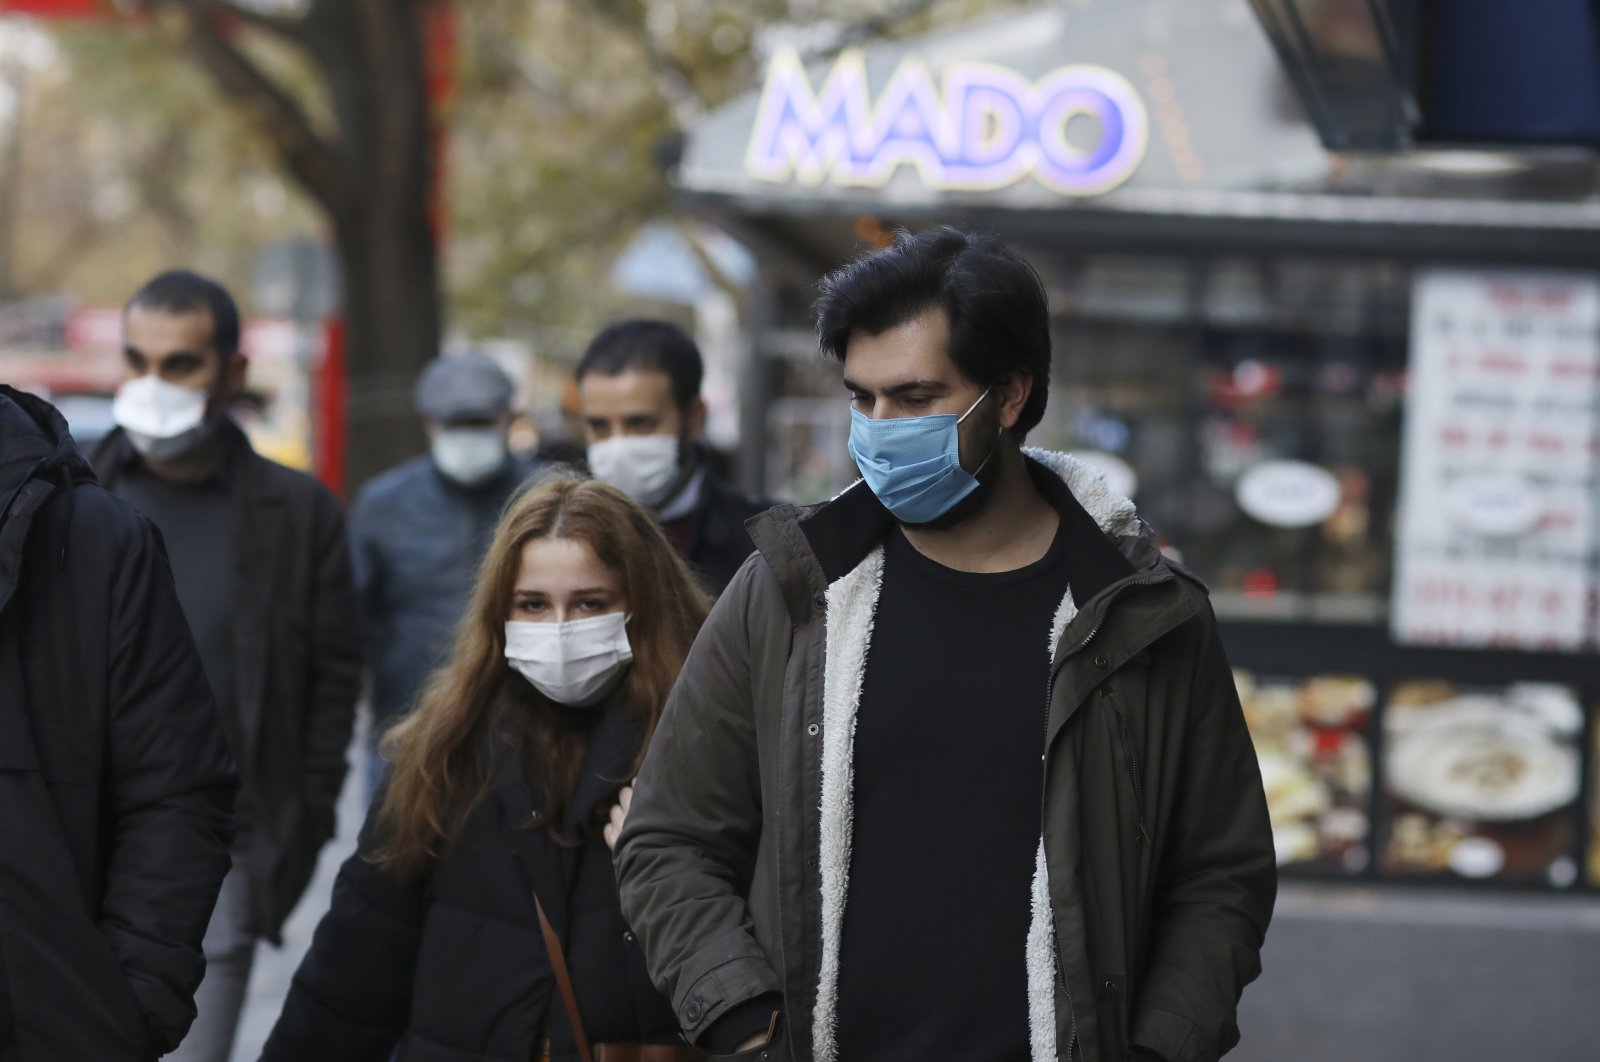 People wearing masks walk on a street in Ankara, Turkey, Dec. 11, 2020. (AP Photo)